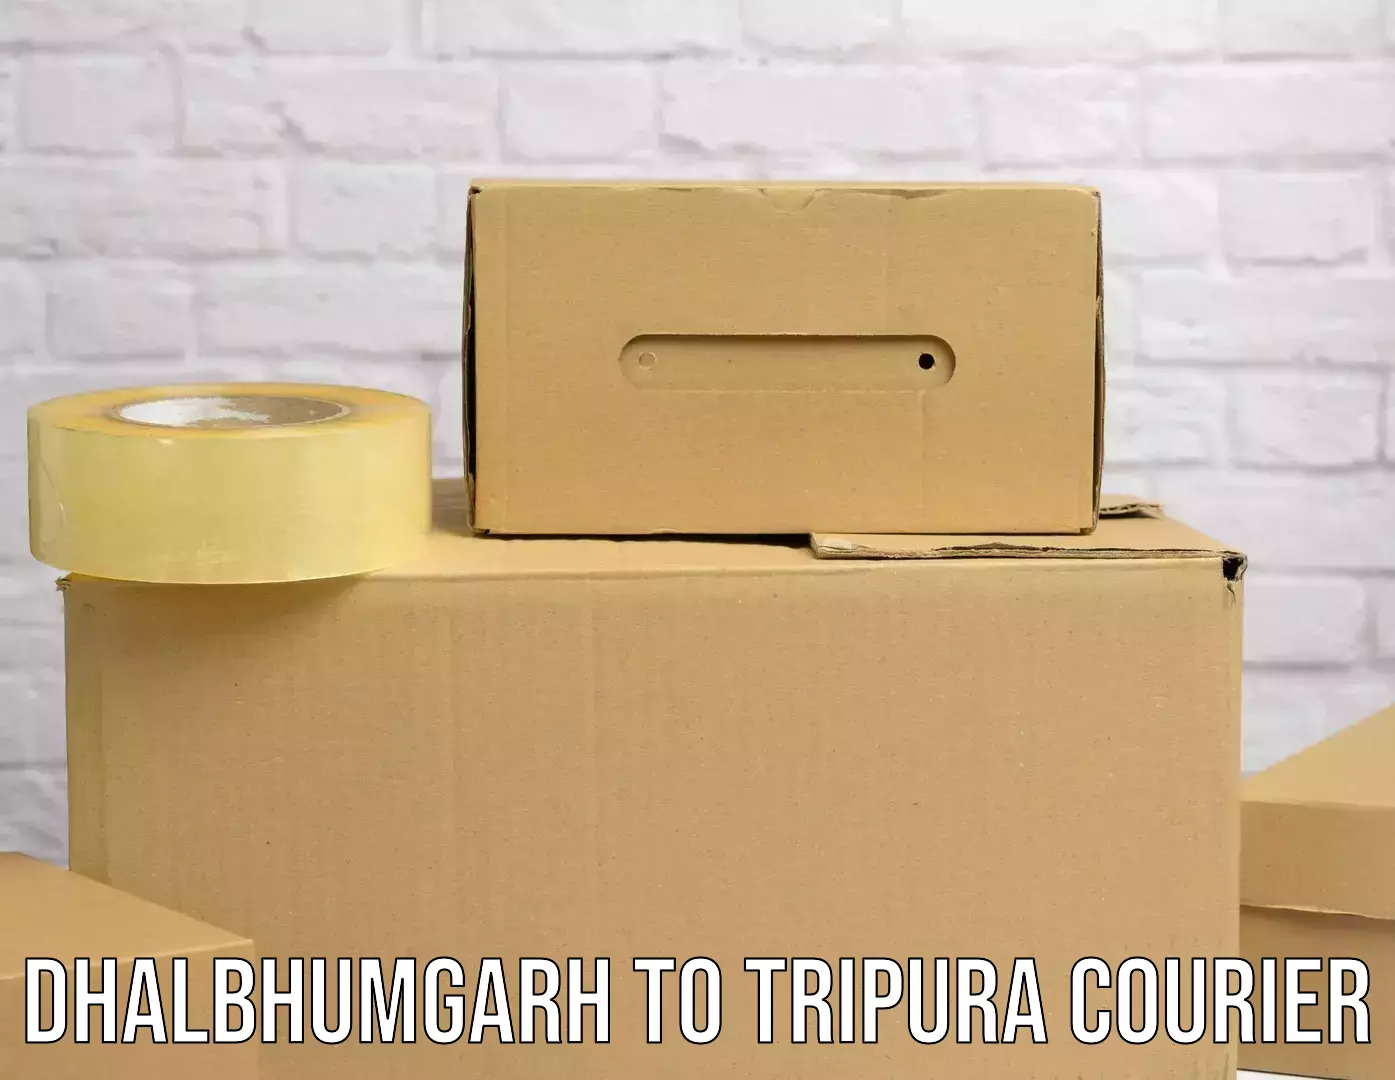 High-capacity shipping options Dhalbhumgarh to Teliamura